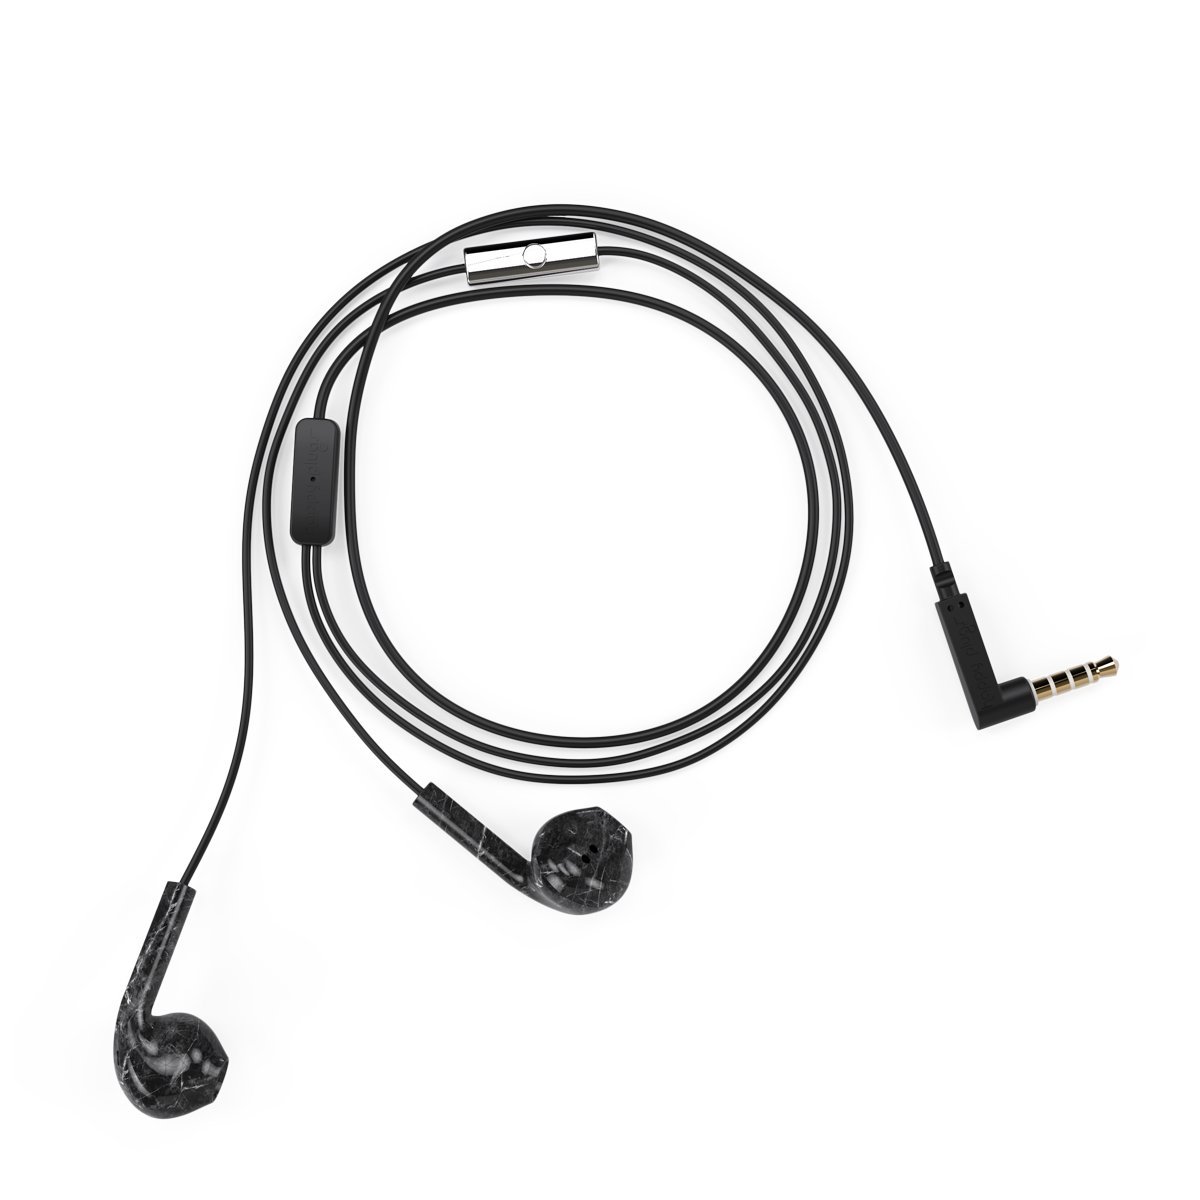 Audífonos con Micrófono Earbud Deluxe Black Marble Happy Plugs